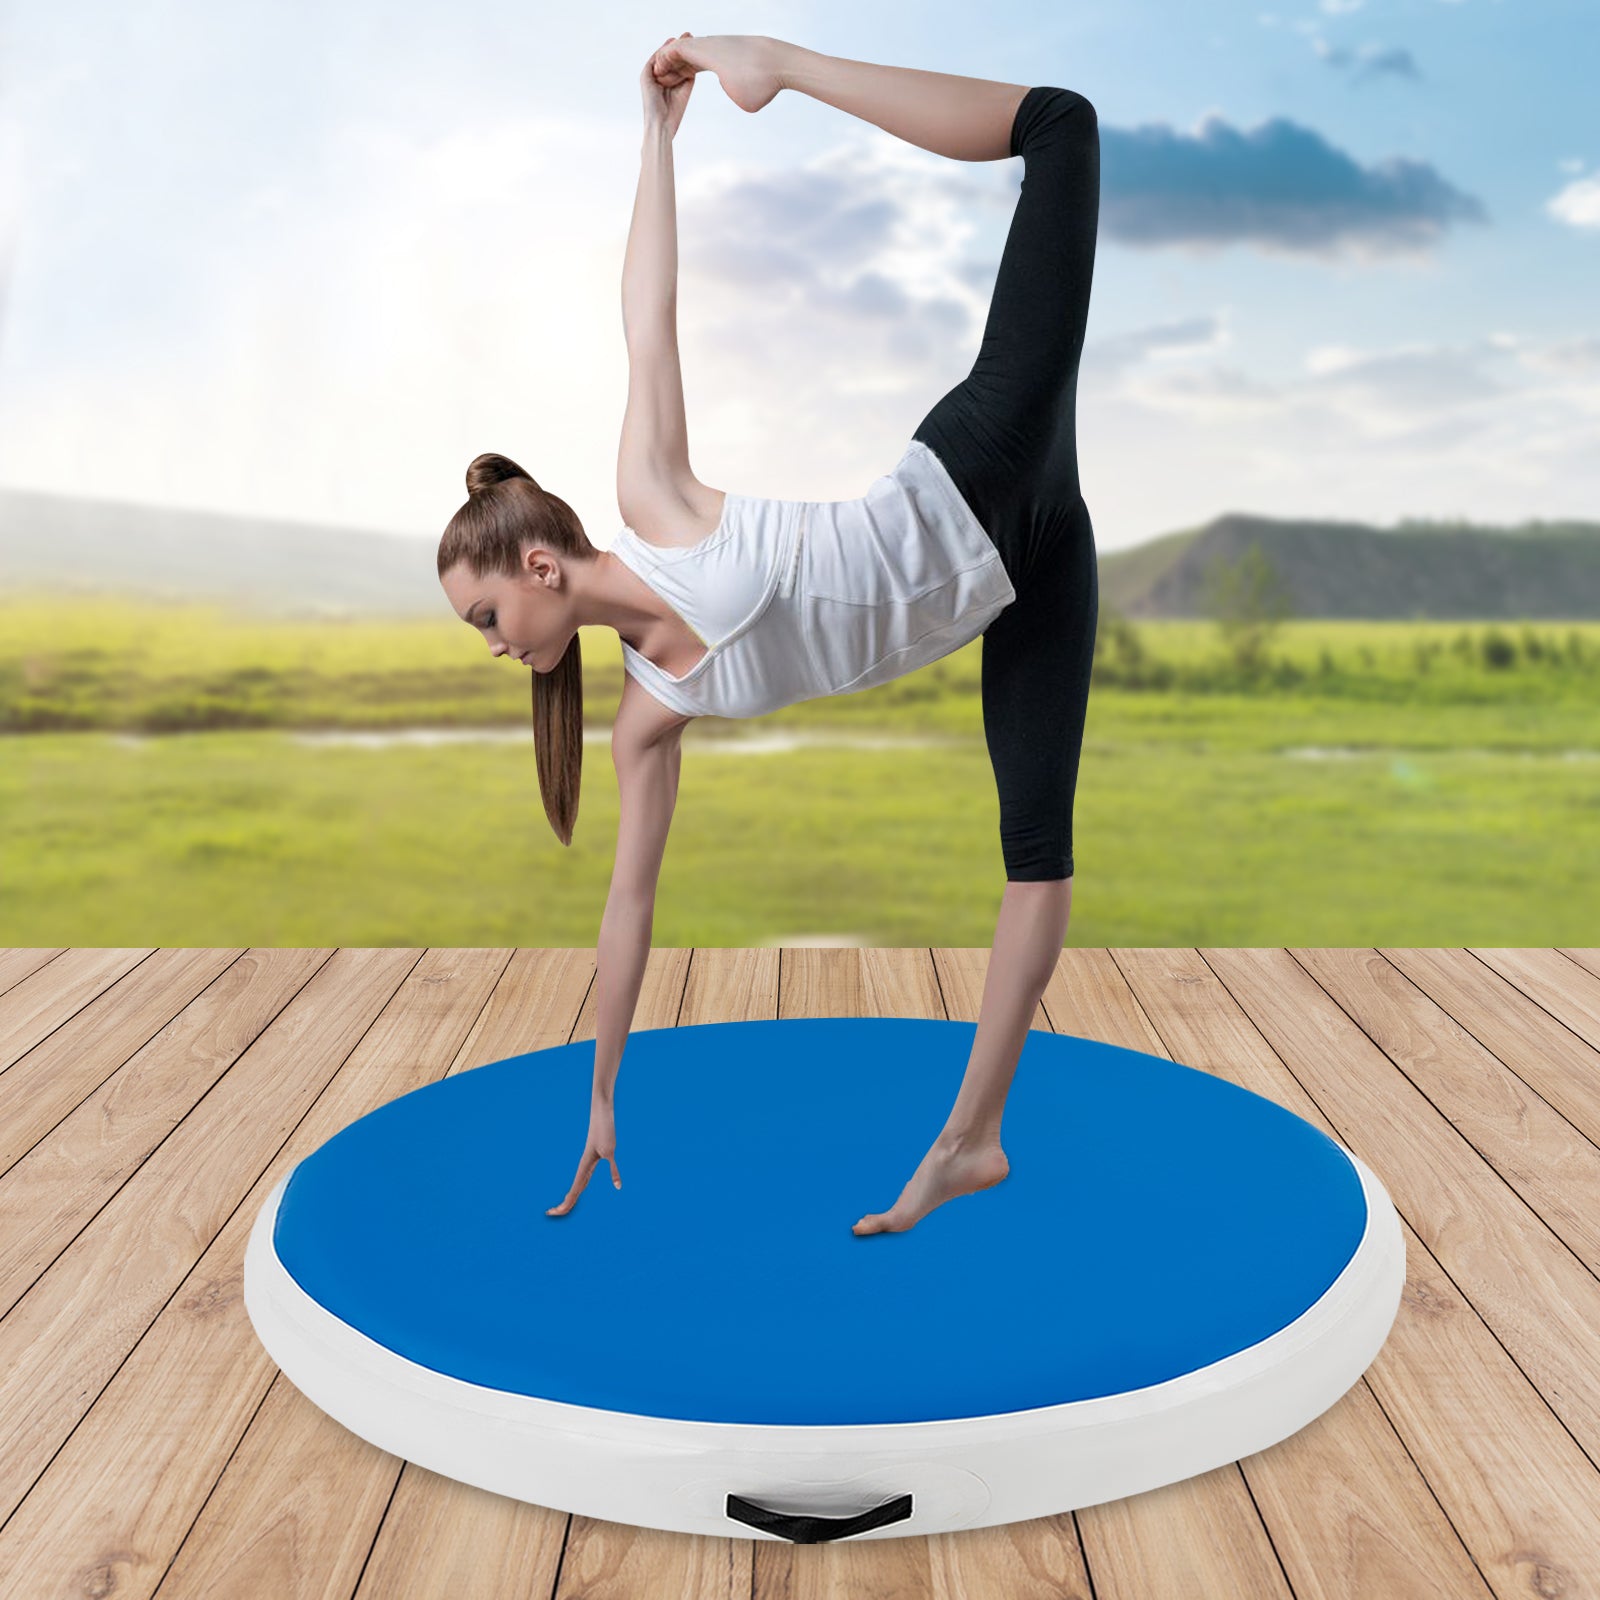 Tappetino gonfiabile per allenamento con pompa ad aria da 600 W,tappetino da ginnastica, yoga, attività all'aperto, blu (100 x 10 cm)